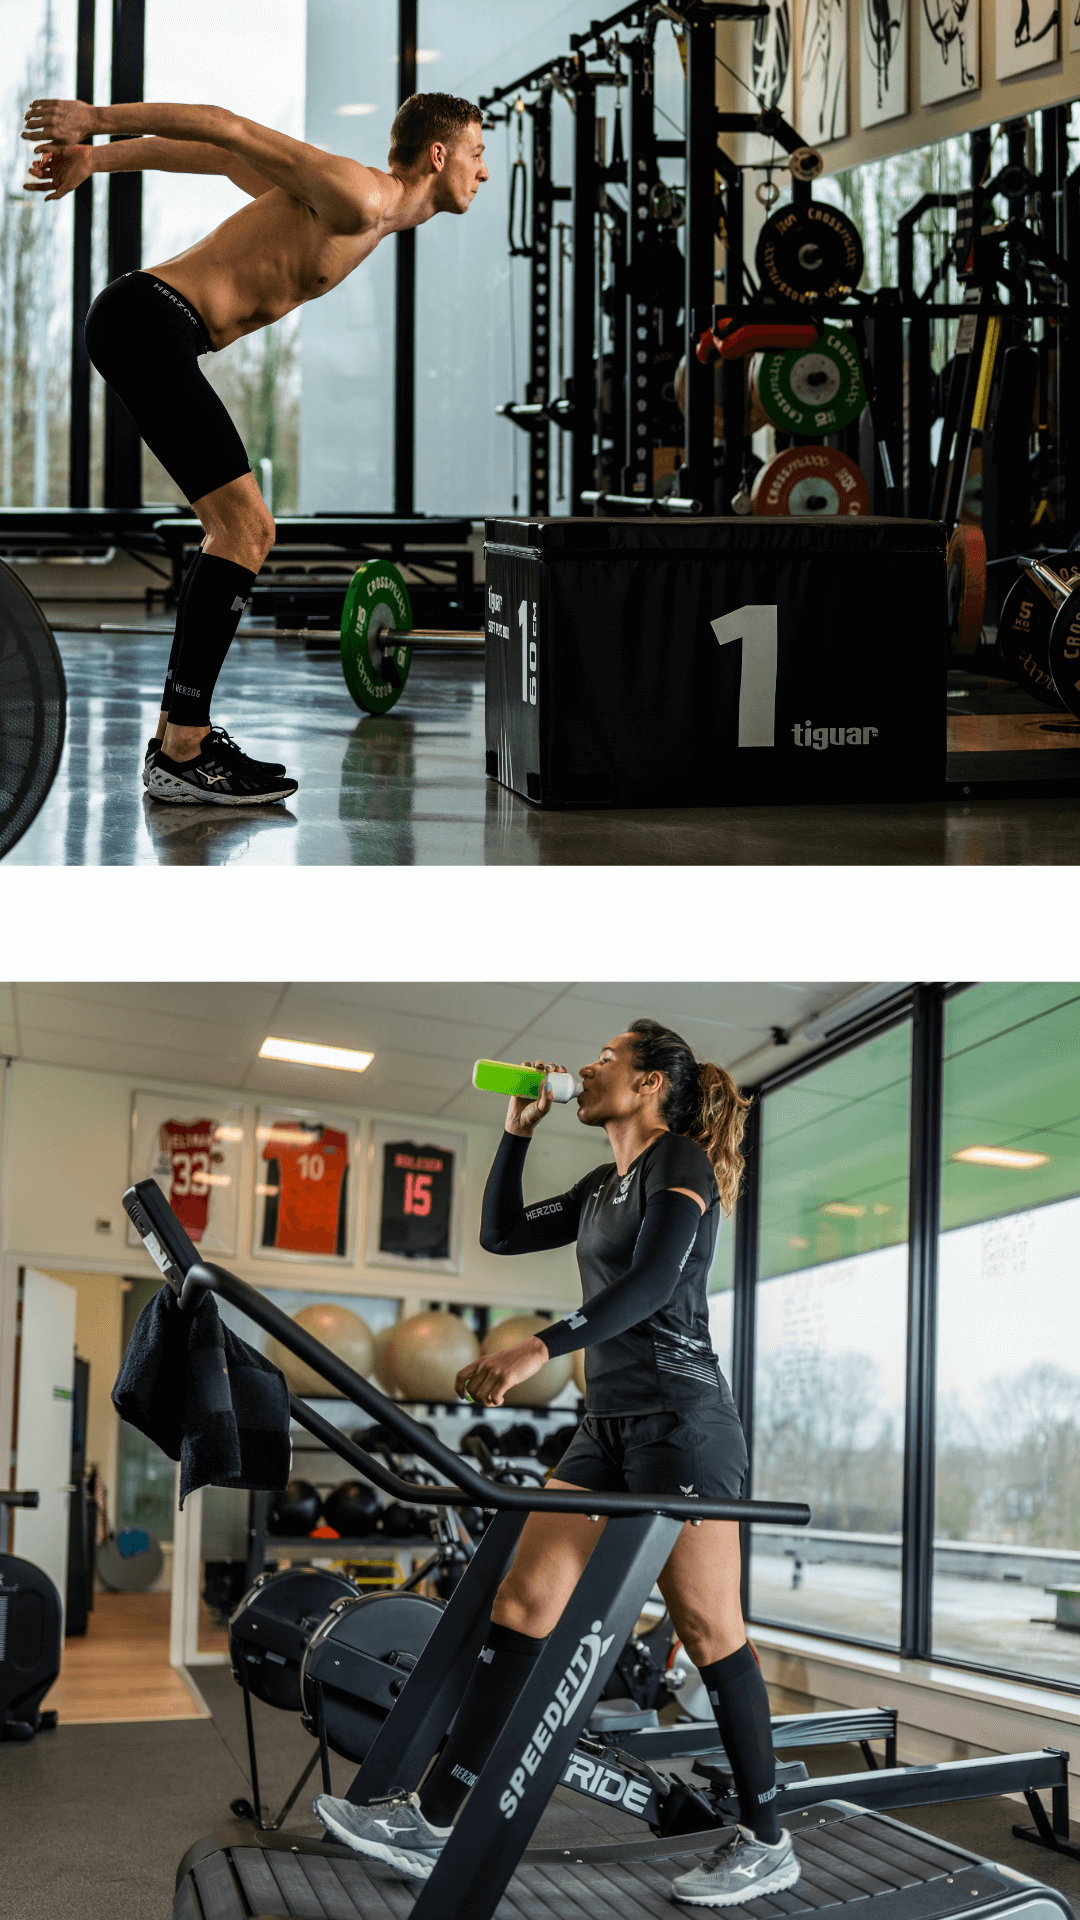 Man doet boxjump, dame is water aan het drinken op loopband. Beide in de sportschool.